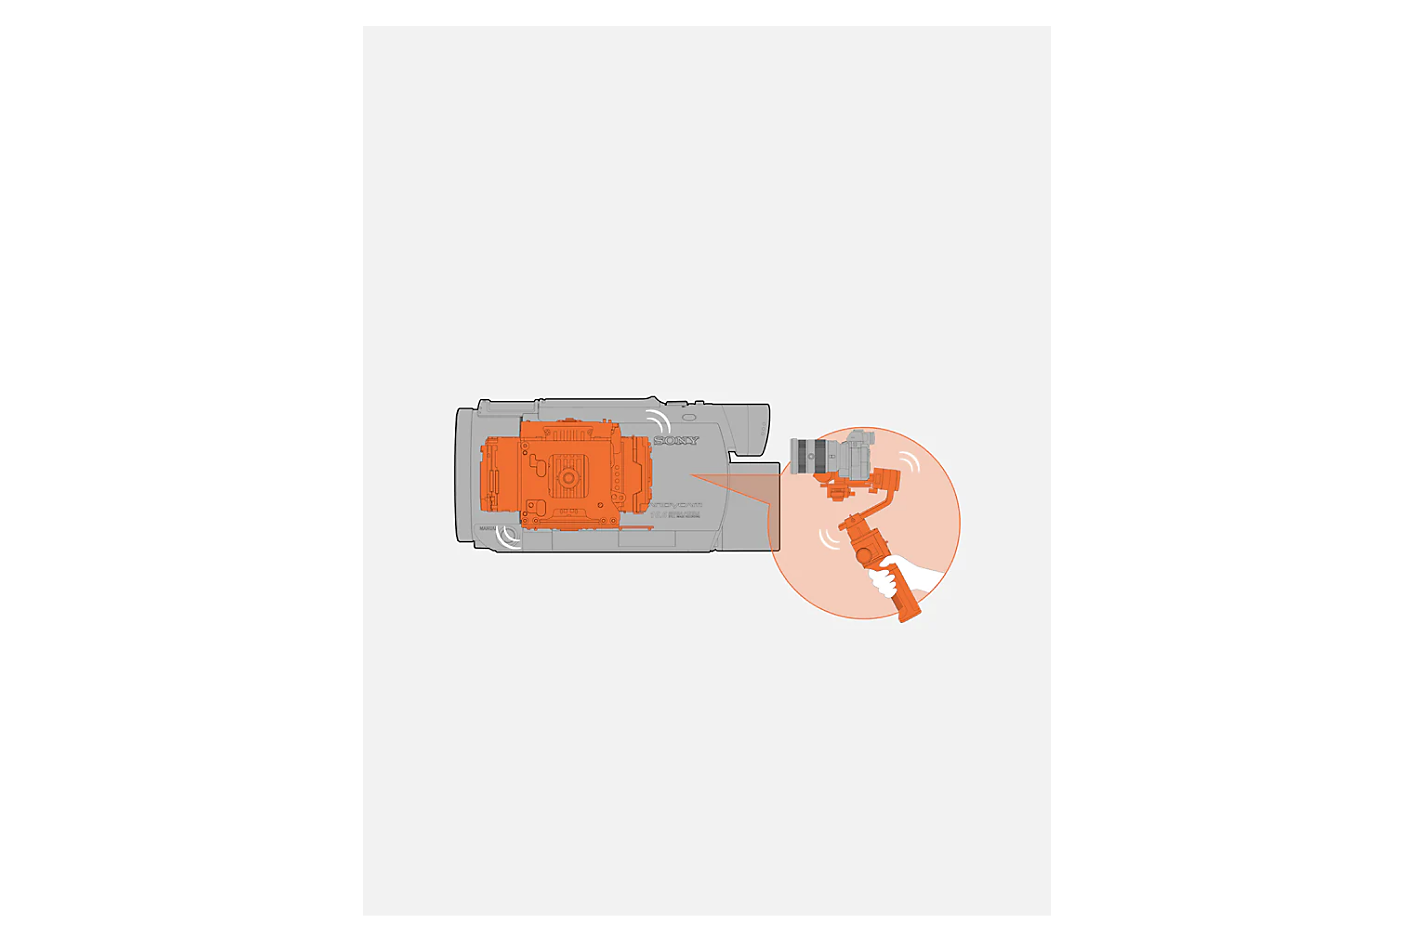 Grafik eines grauen Camcorders mit orangefarbenem integriertem Gimbal-Mechanismus